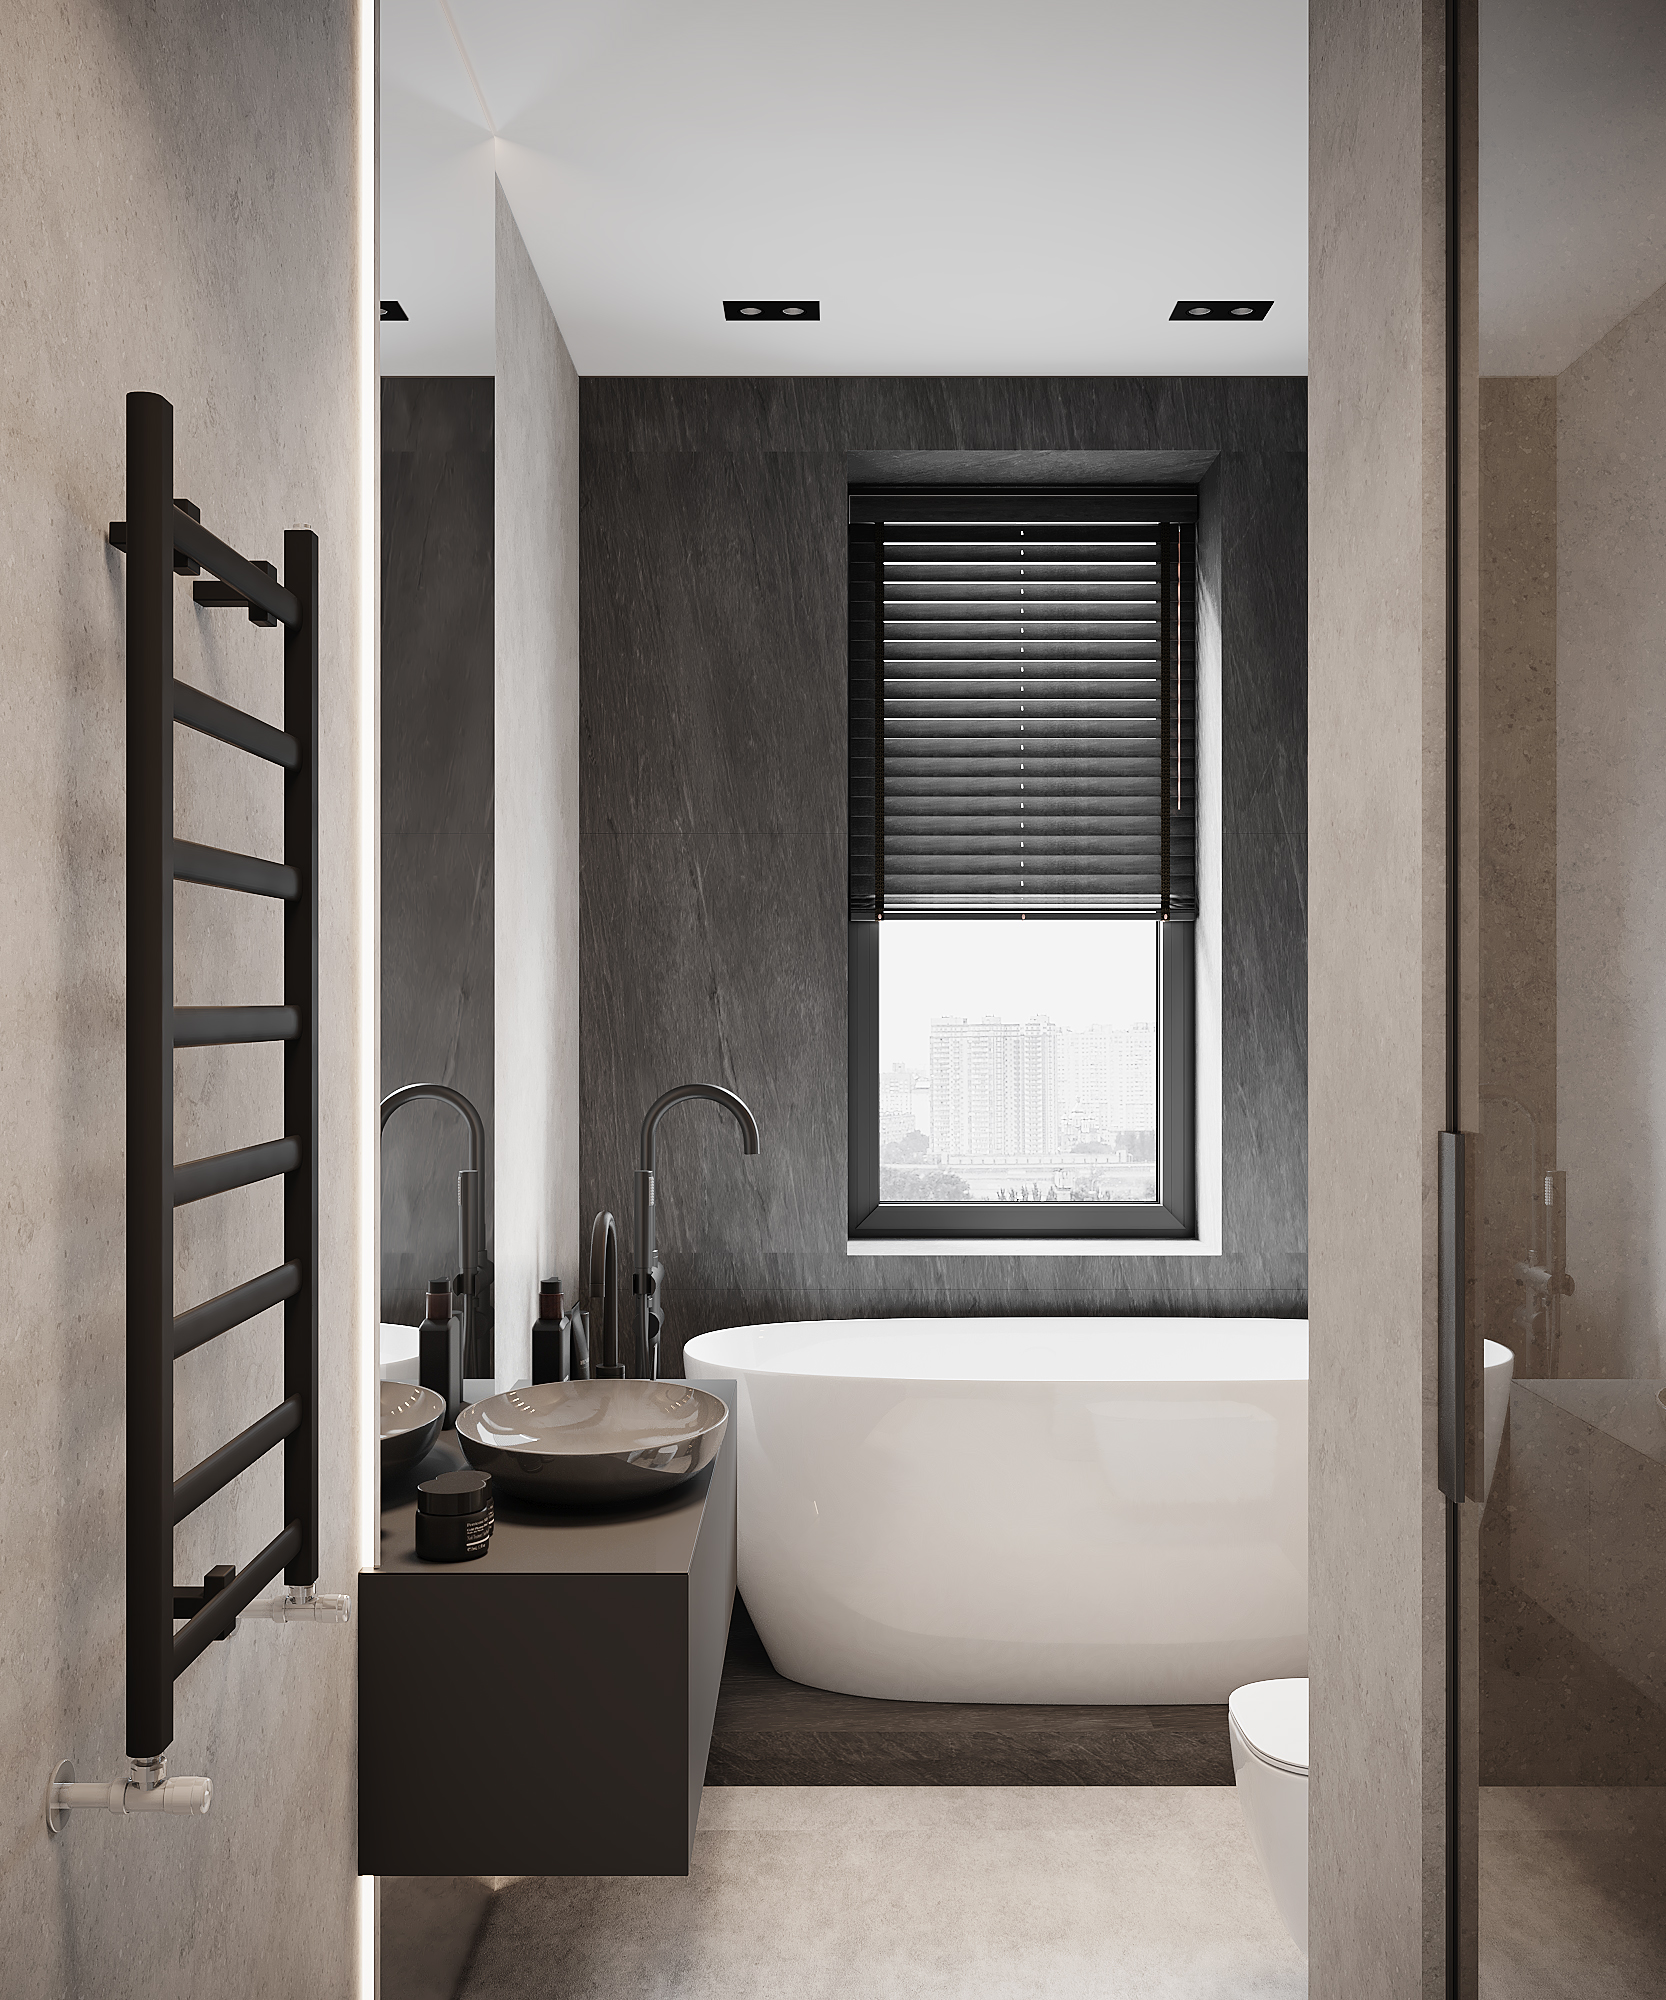 + фото идей современного дизайна ванной комнаты